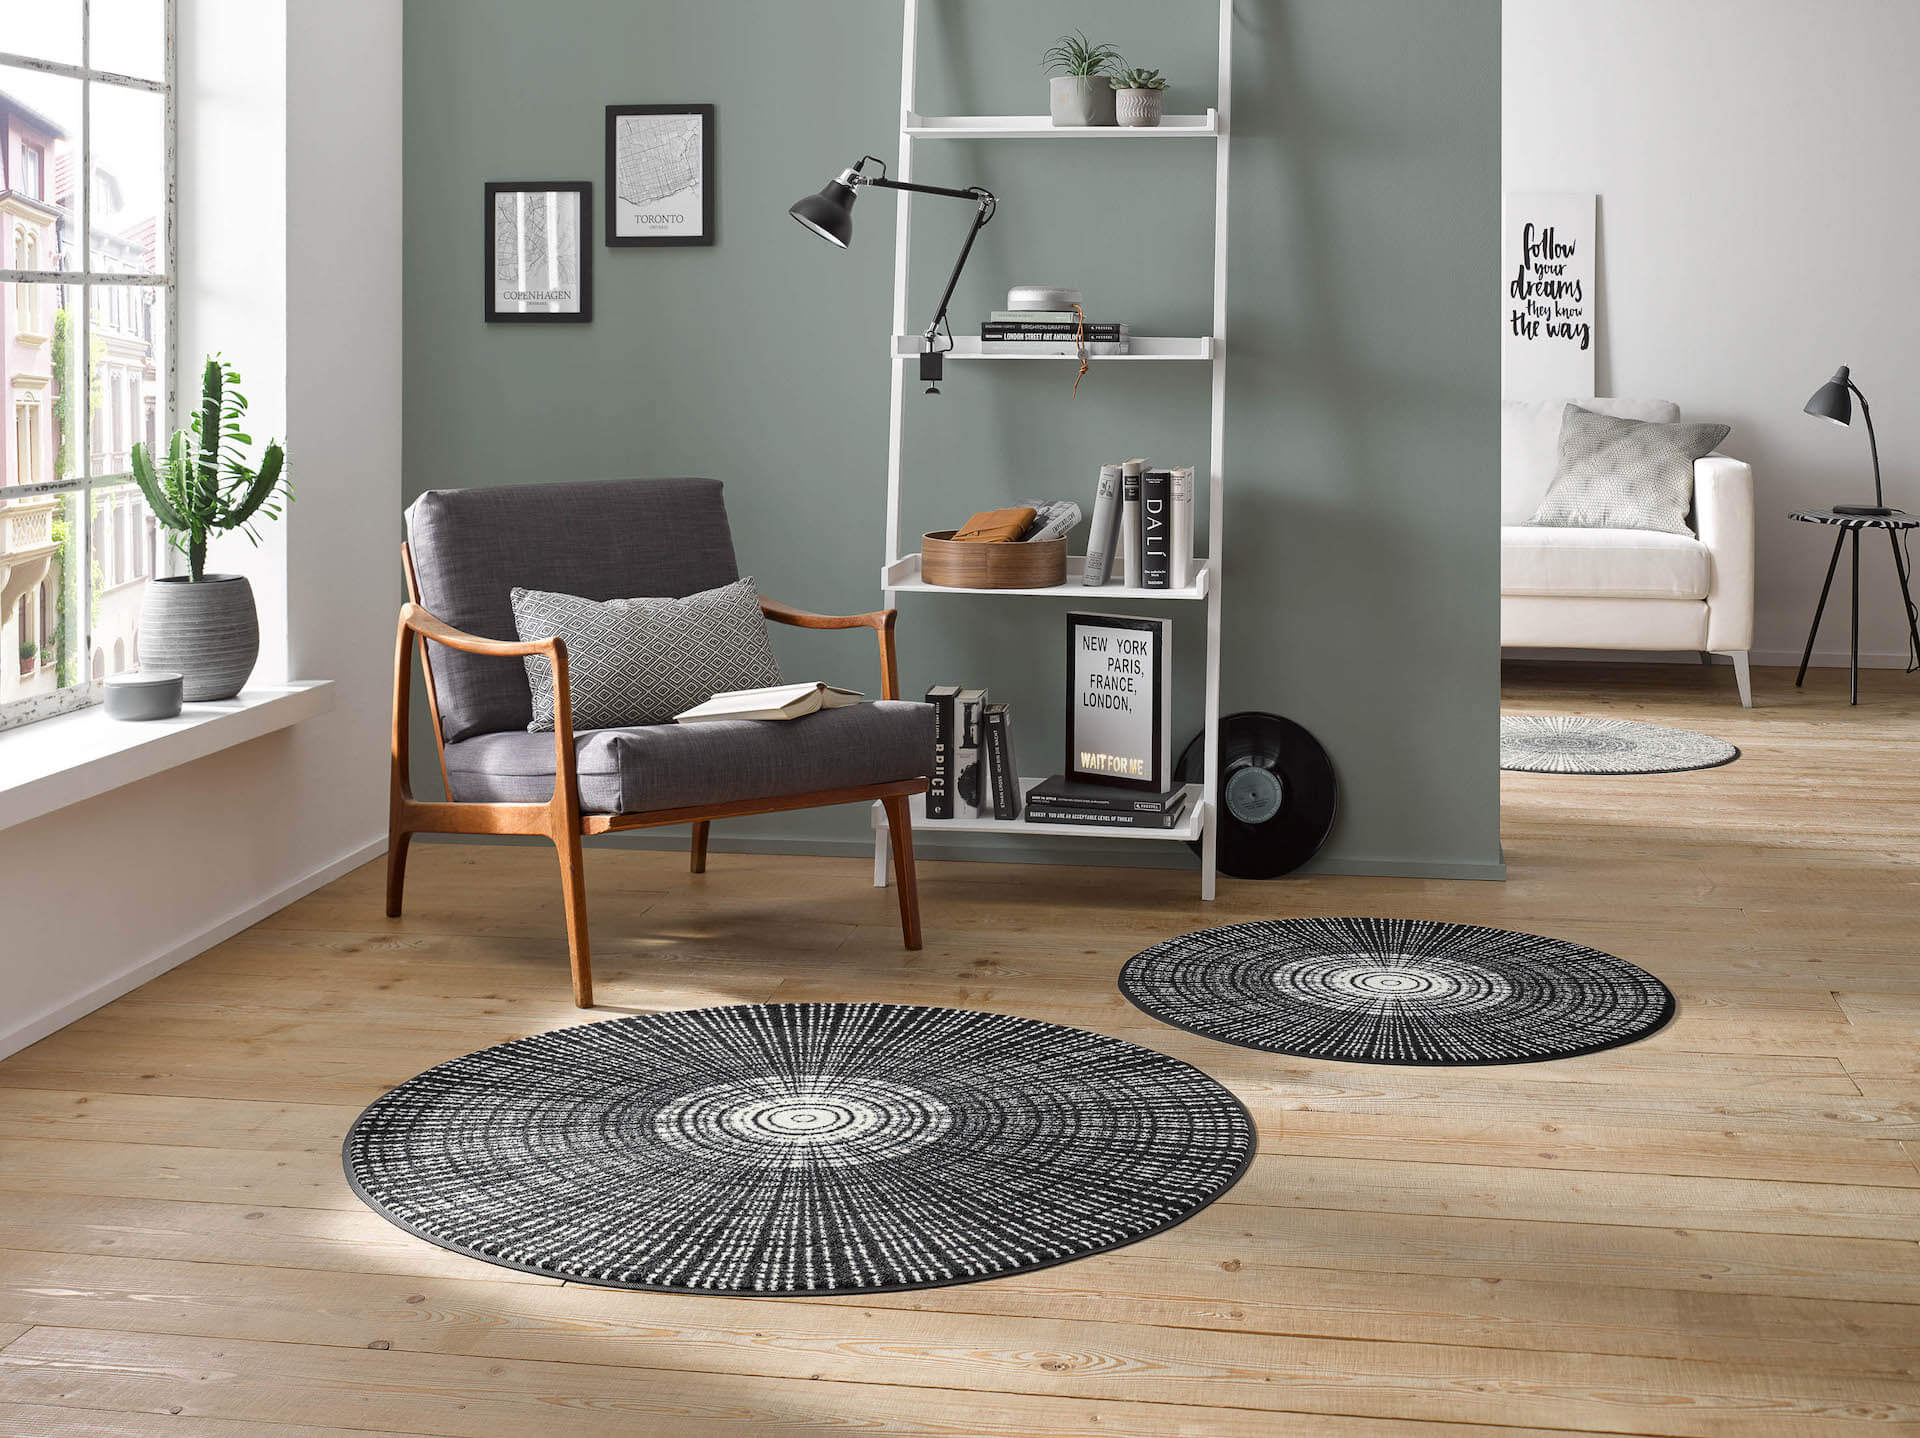 Fußmatte Cascara black, Wash & Dry Design, runde Sonderform, Interieurbild